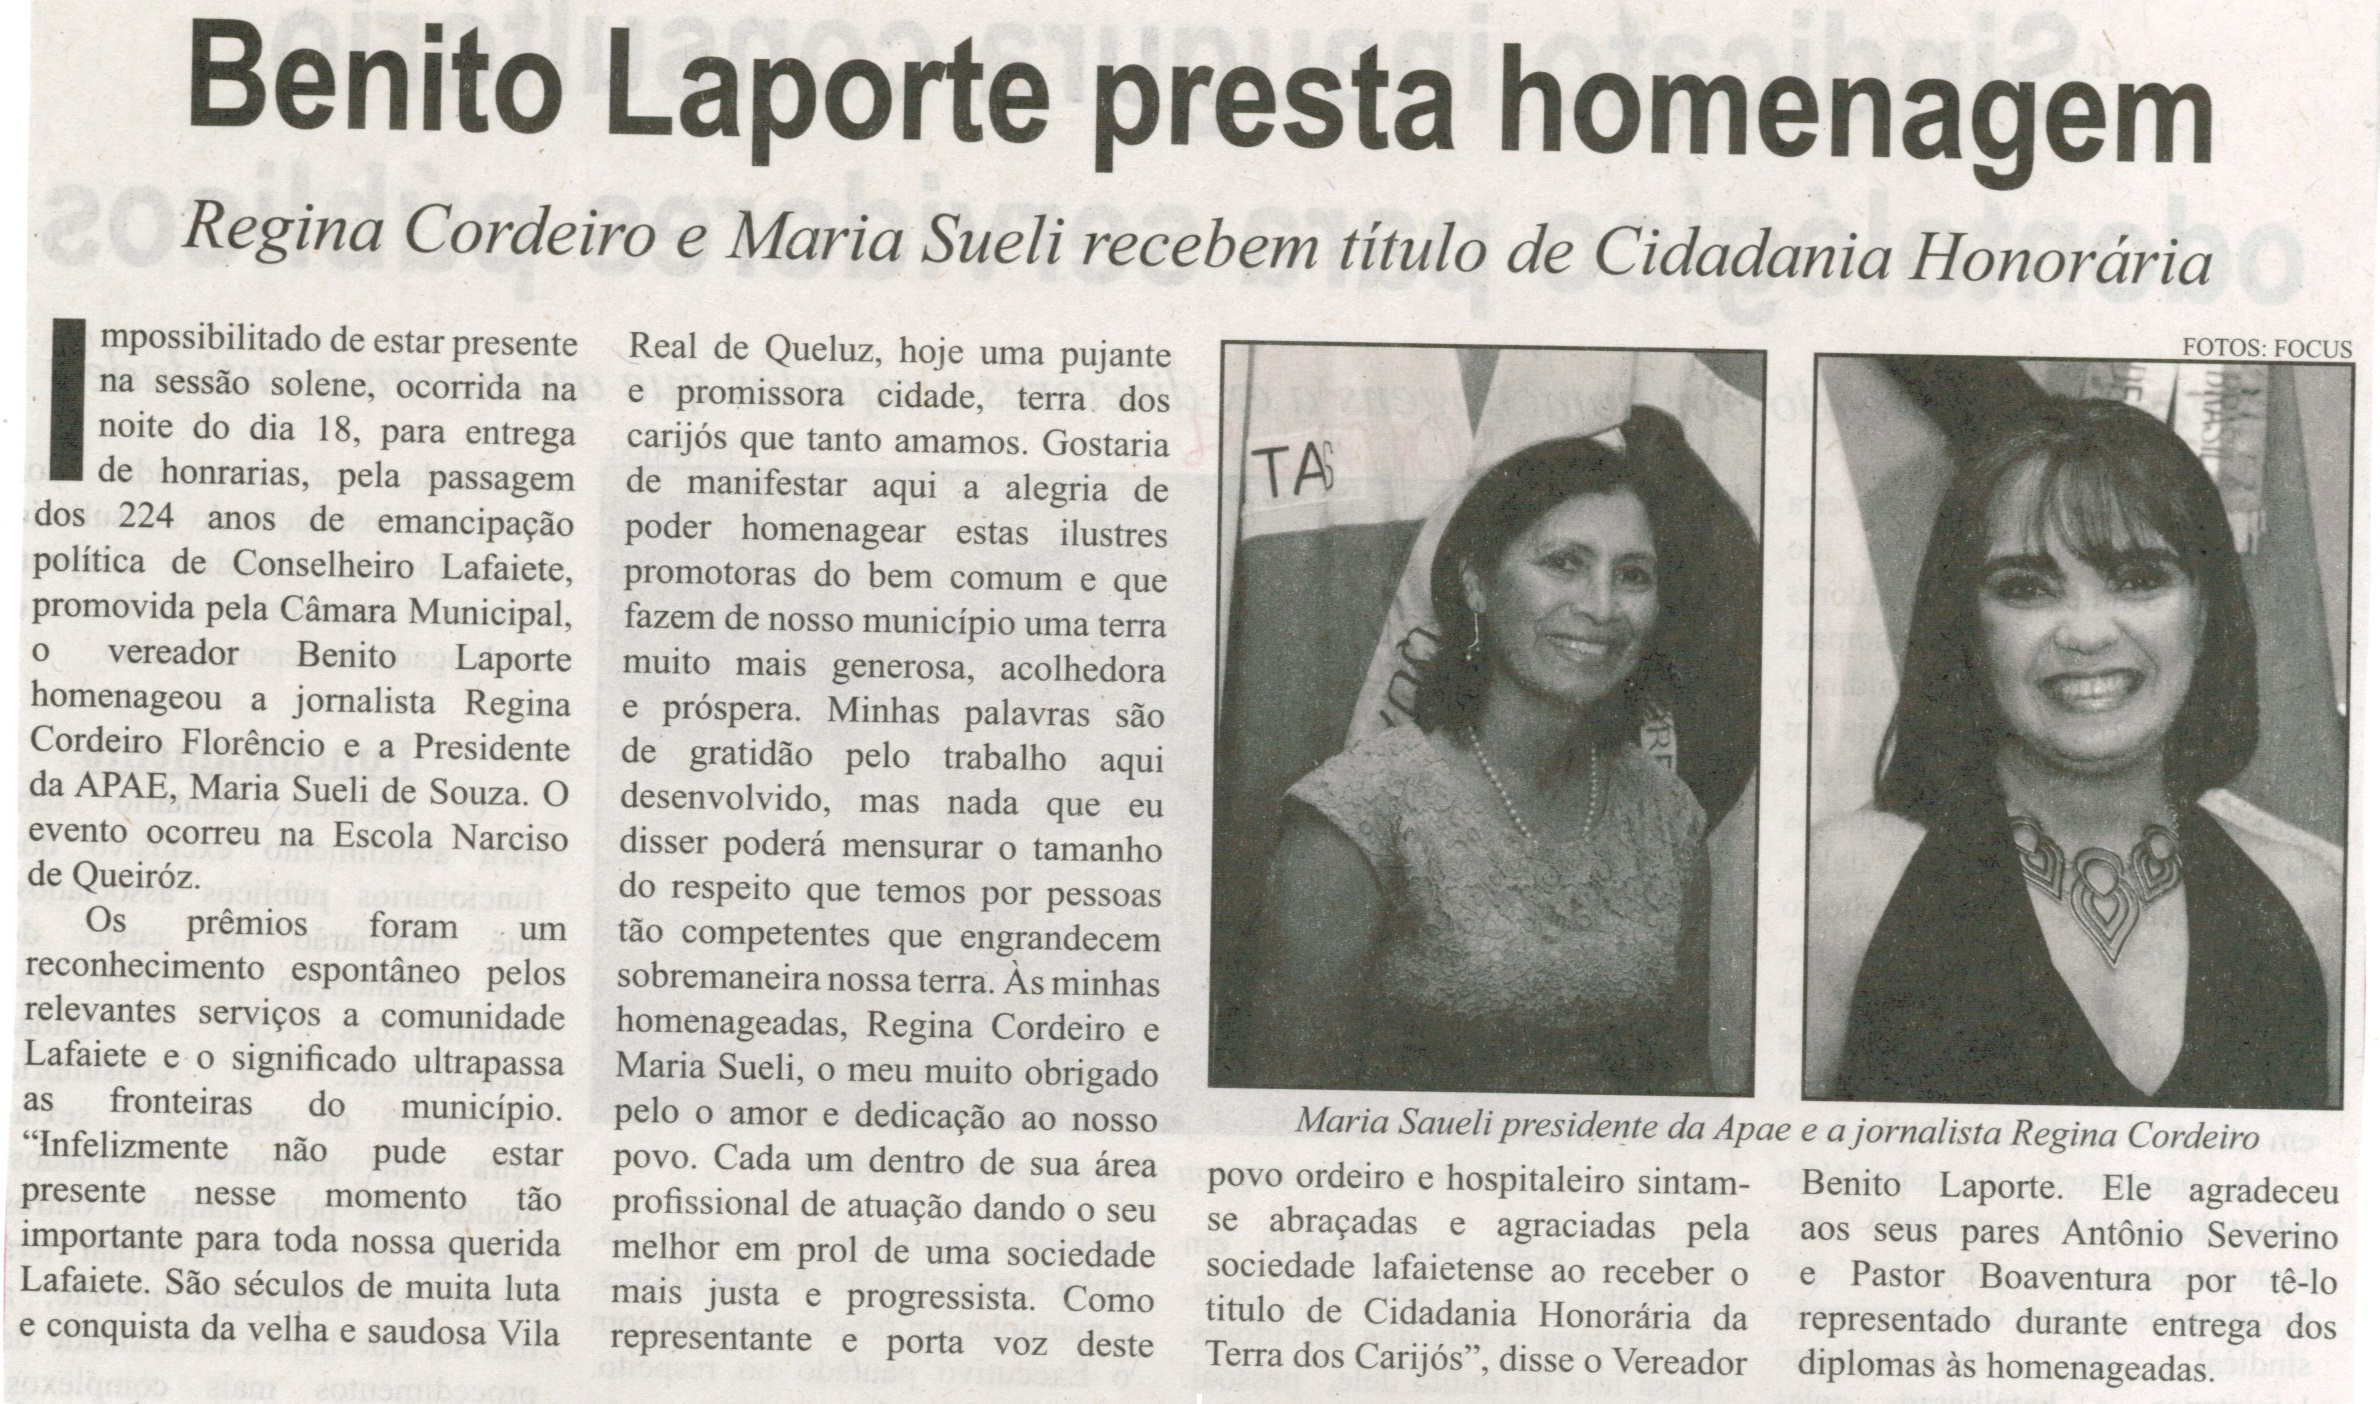 Benito Laporte presta homenagem: Regina Cordeiro e Maria Sueli recebem título de cidadania honorária. Correio de Minas, Conselheiro Lafaiete,  27 set. 2014, p. 8.